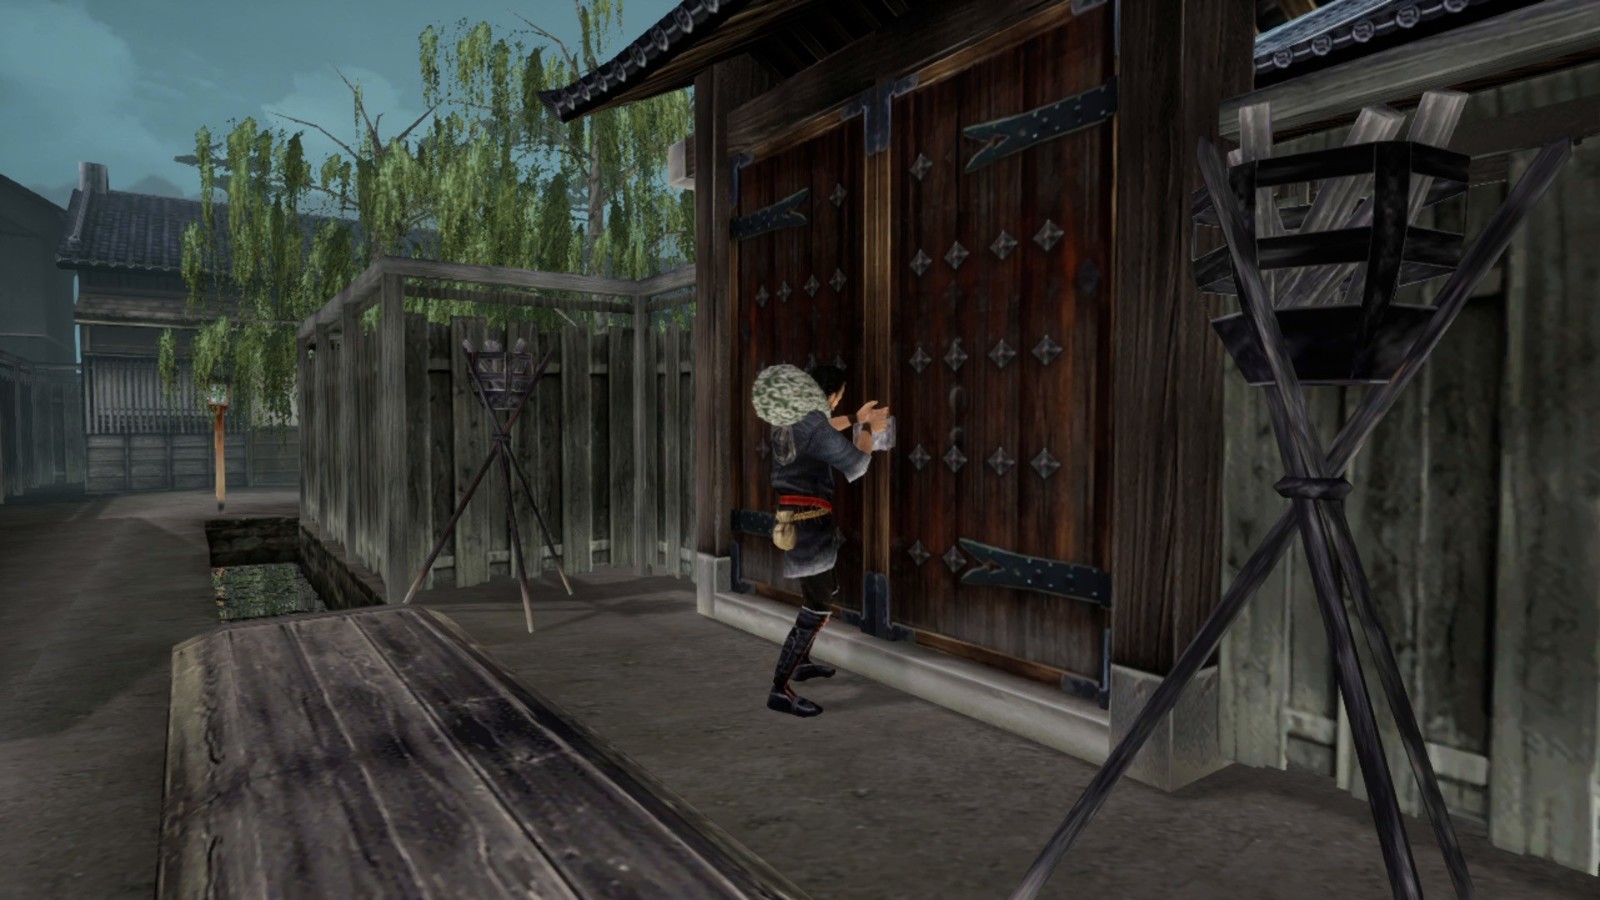 潜行动作游戏《神技：盗来》现已在Steam发售 支持繁体中文 二次世界 第2张